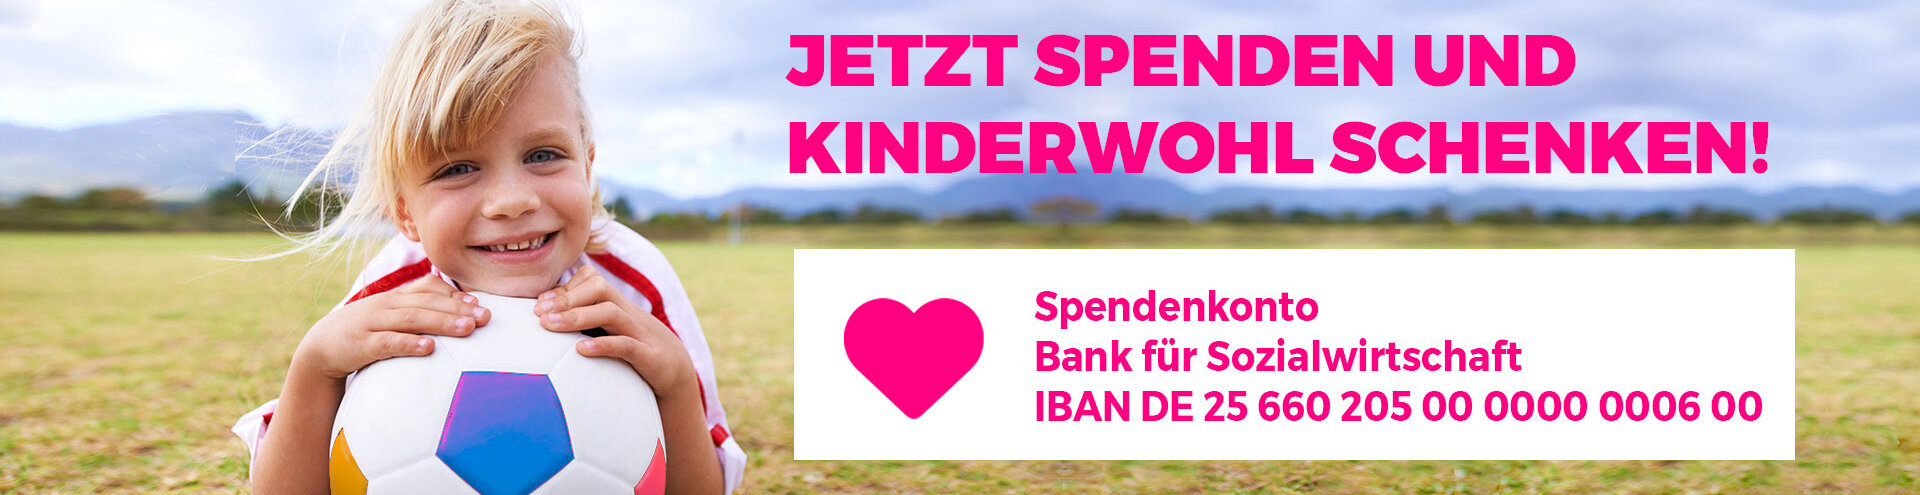 blondes Mädchen mit Fussball- Spenden Banner mit Text Jetzt Spenden und Kinderwohl schenken!